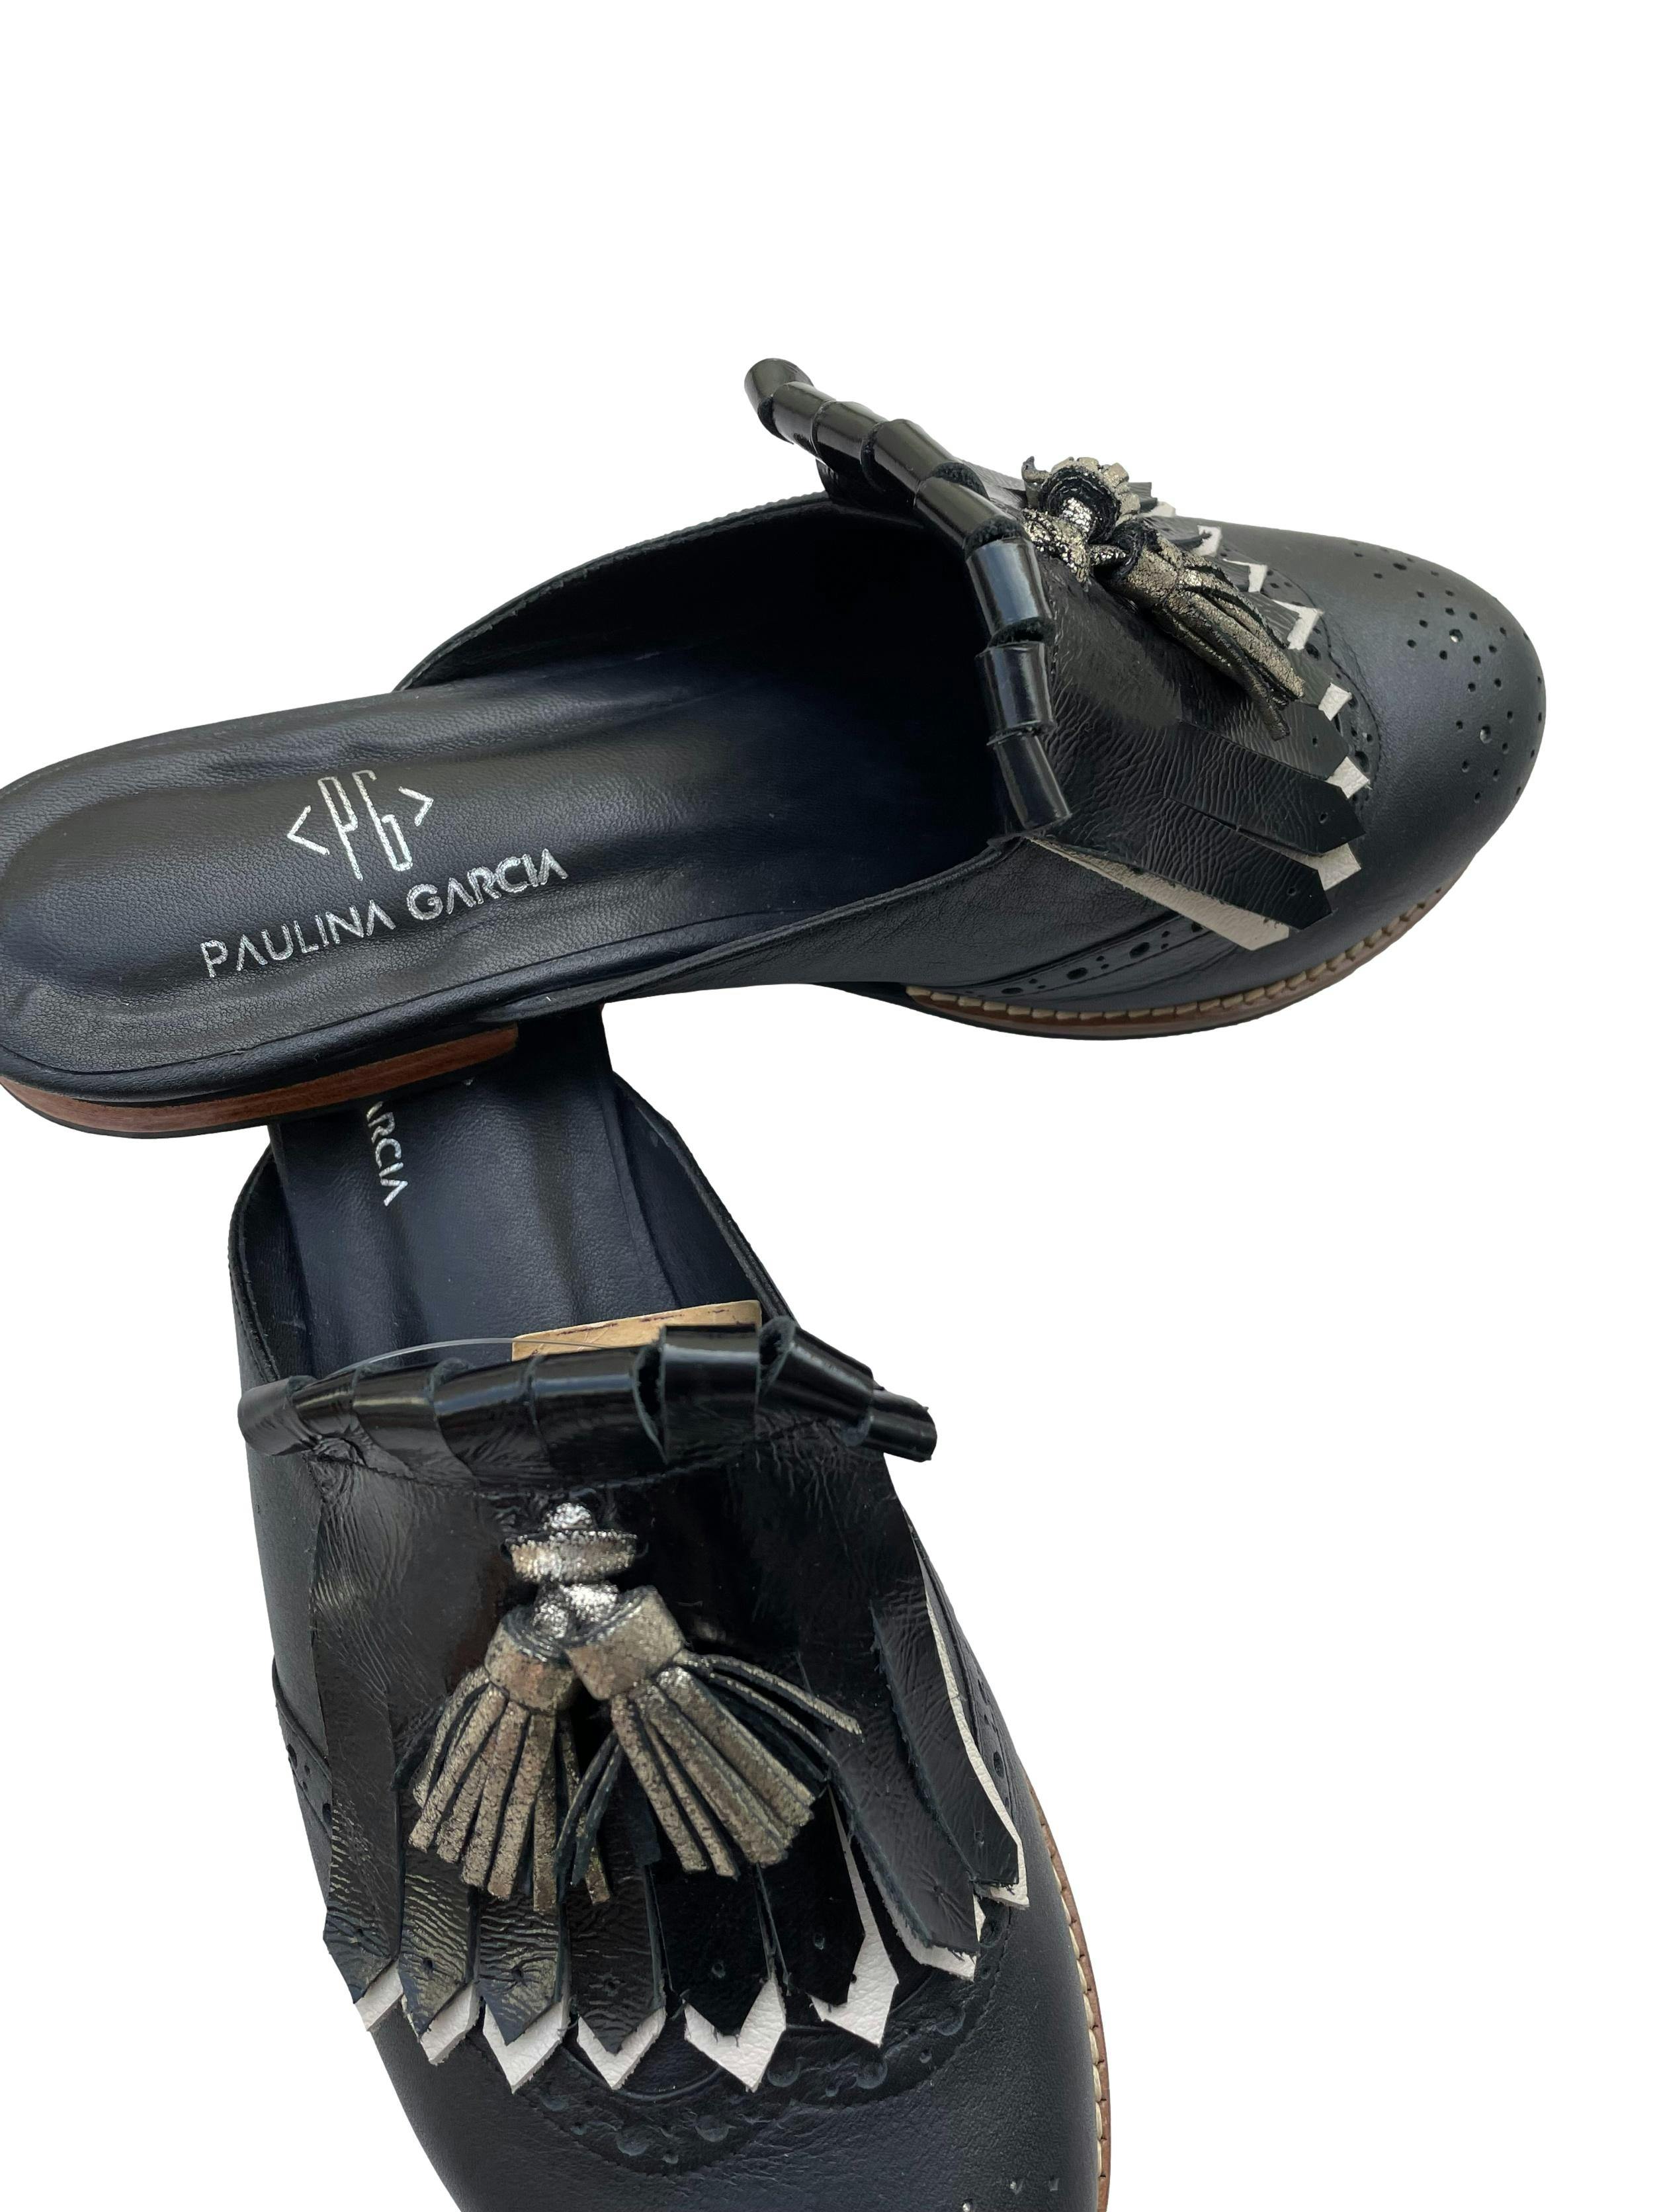 Zapatos mule Paulina Garcia, de cuero negro con flecos y borlas plateadas. Estado como nuevo. 